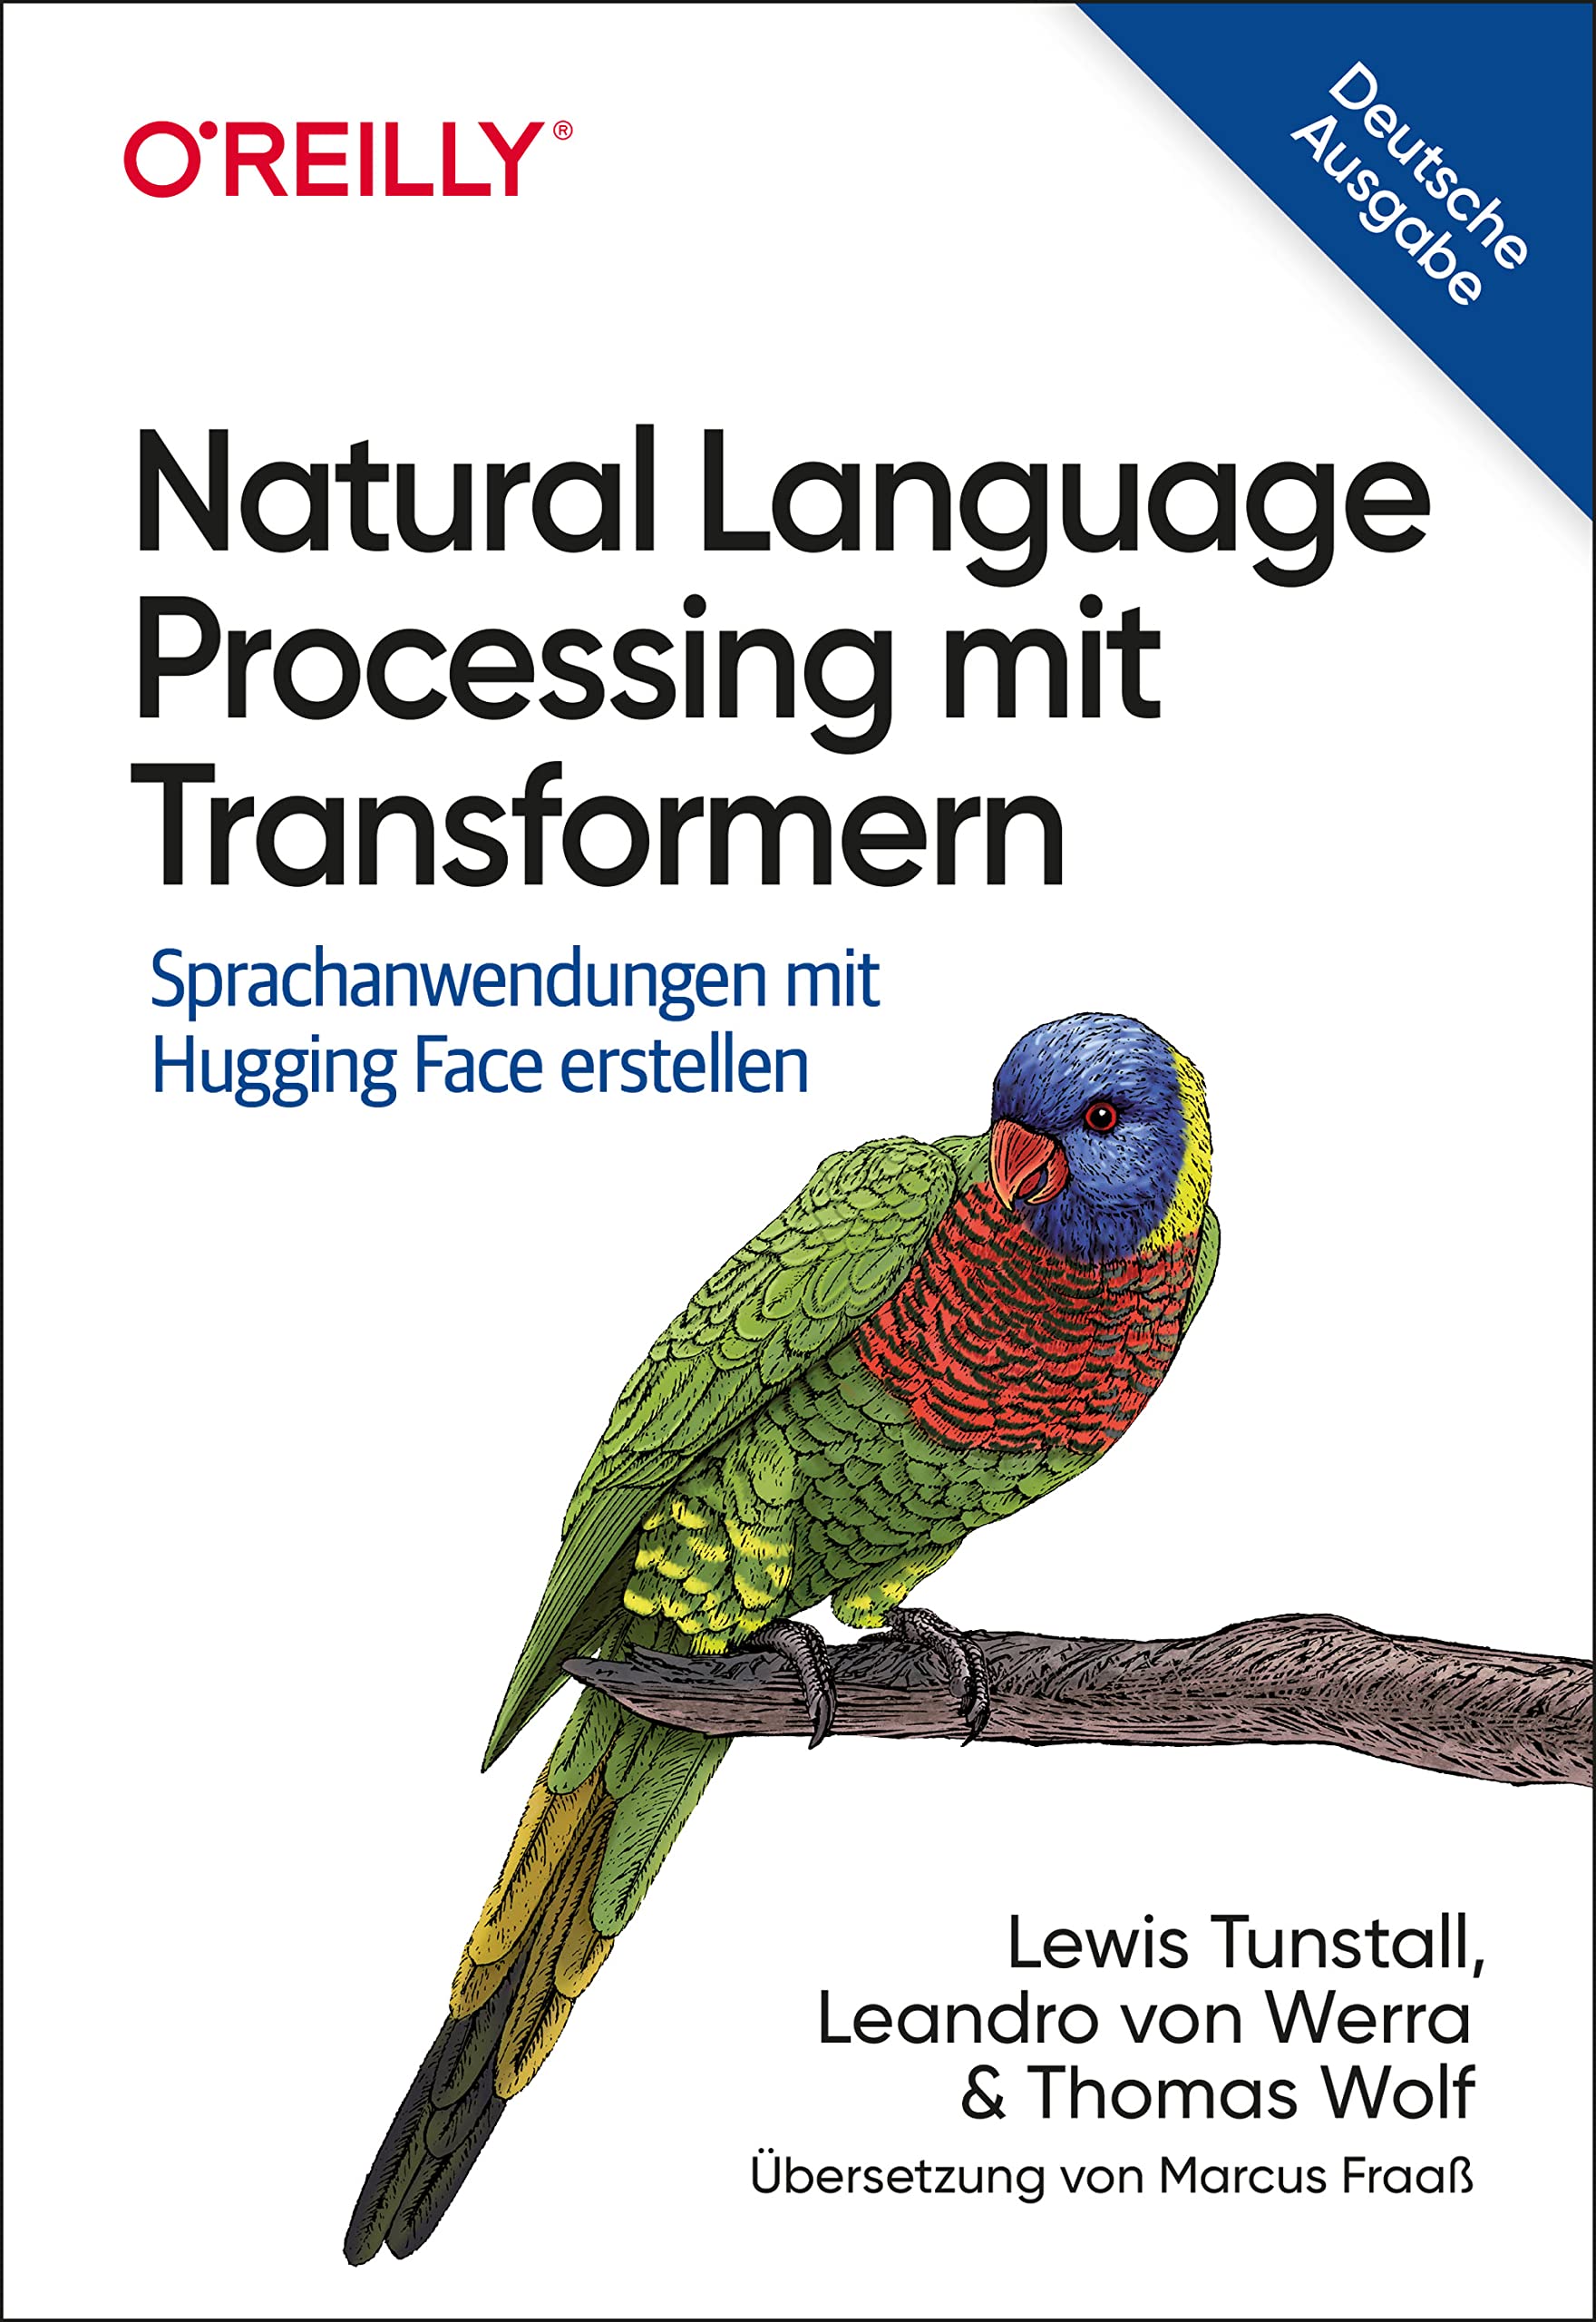 Natural Language Processing mit Transformern: Sprachanwendungen mit Hugging Face erstellen (Animals) (German Edition)